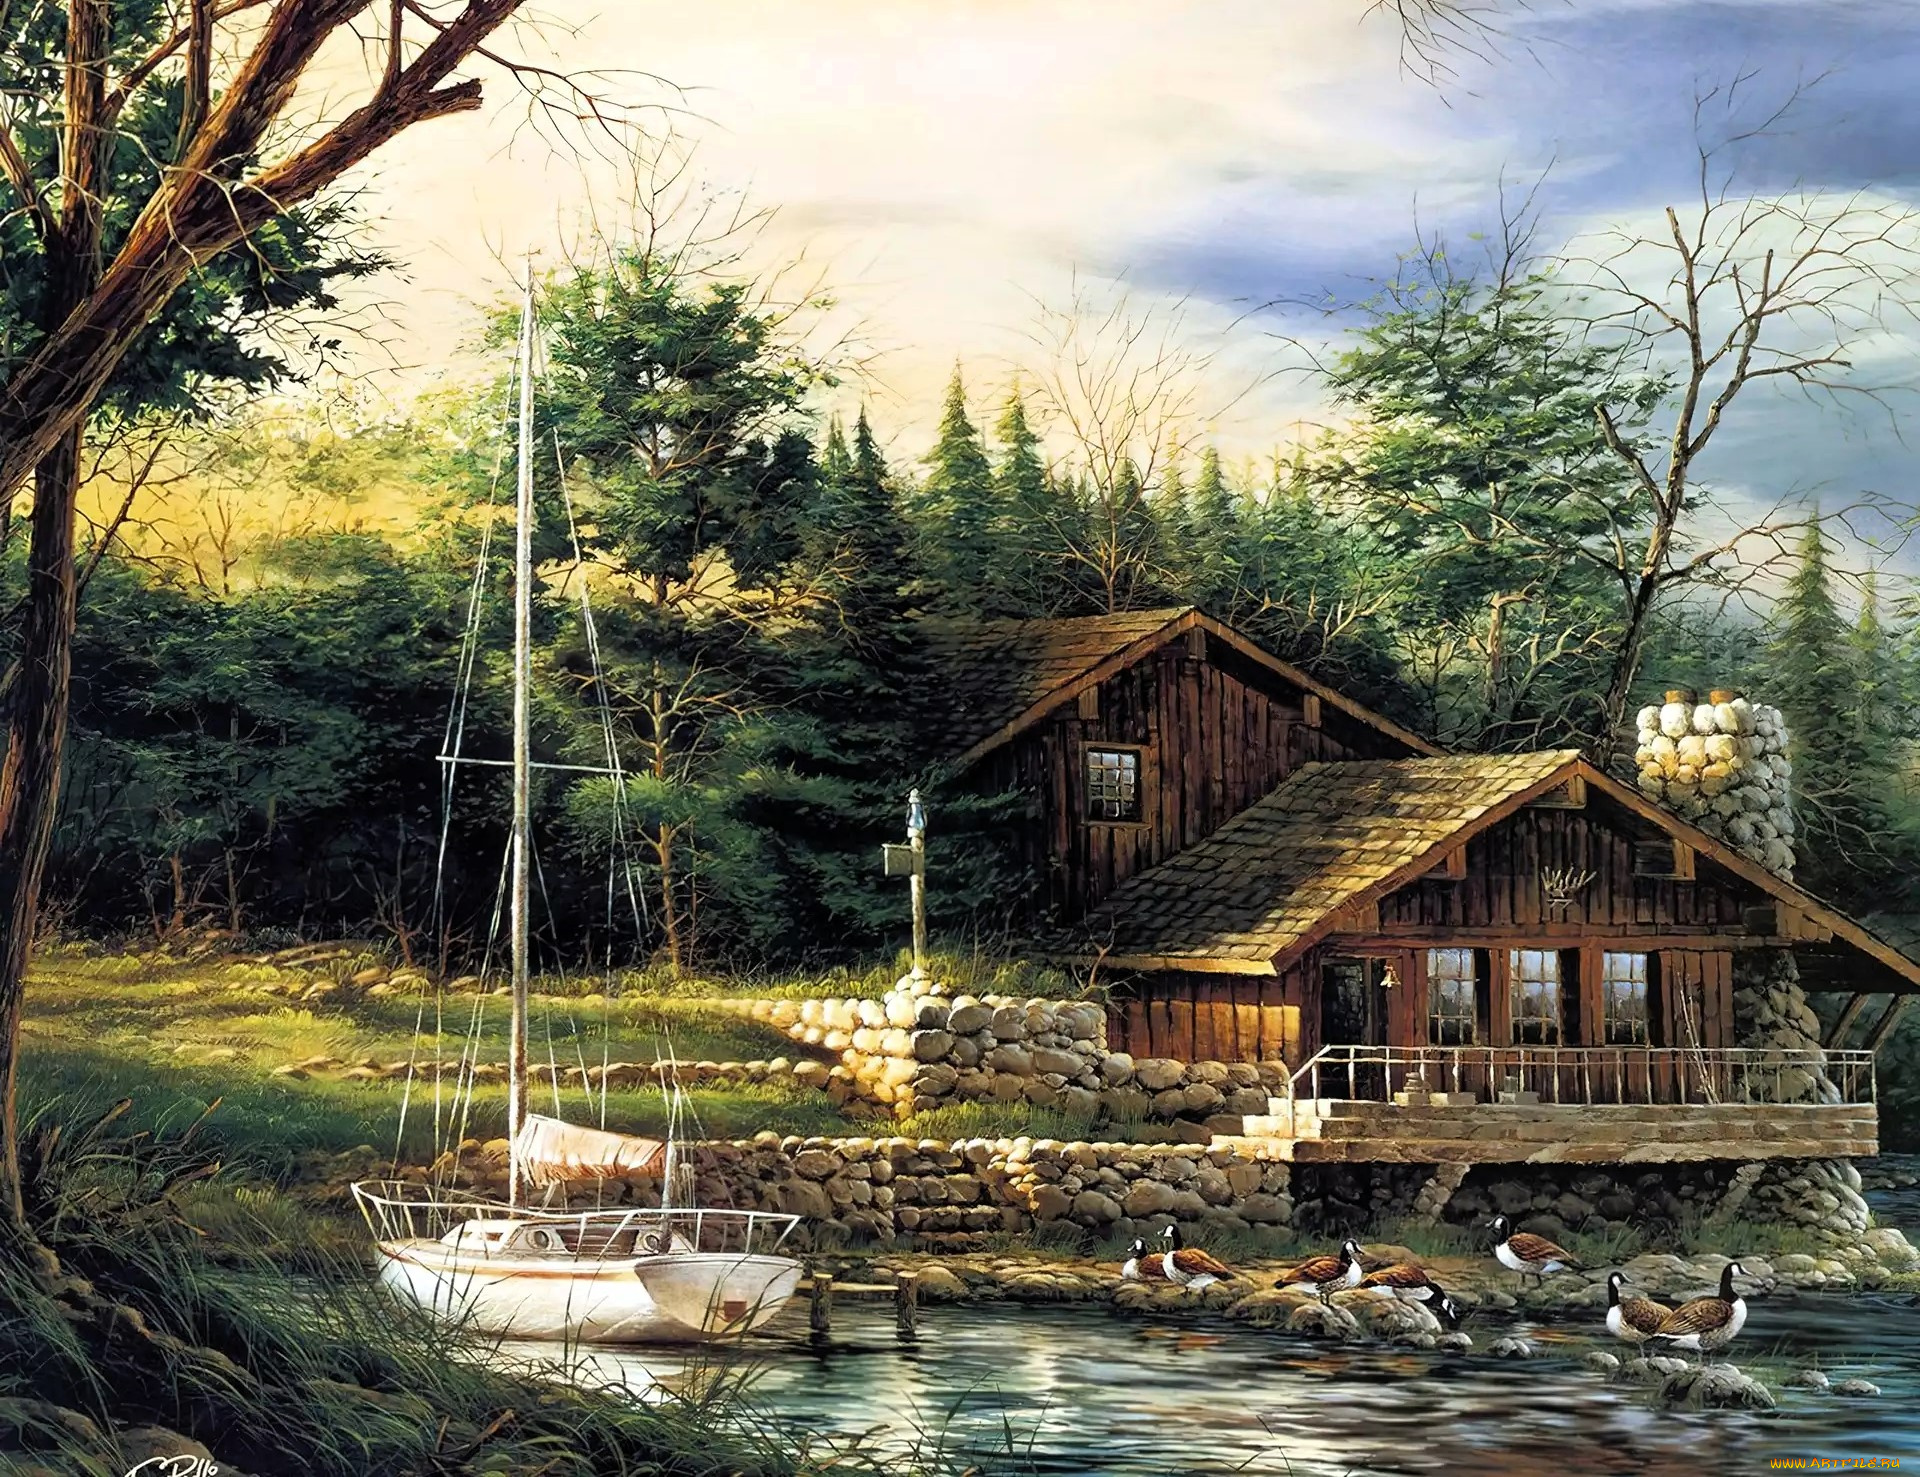 рисованное, terry, redlin, дом, яхта, озеро, птицы, лес